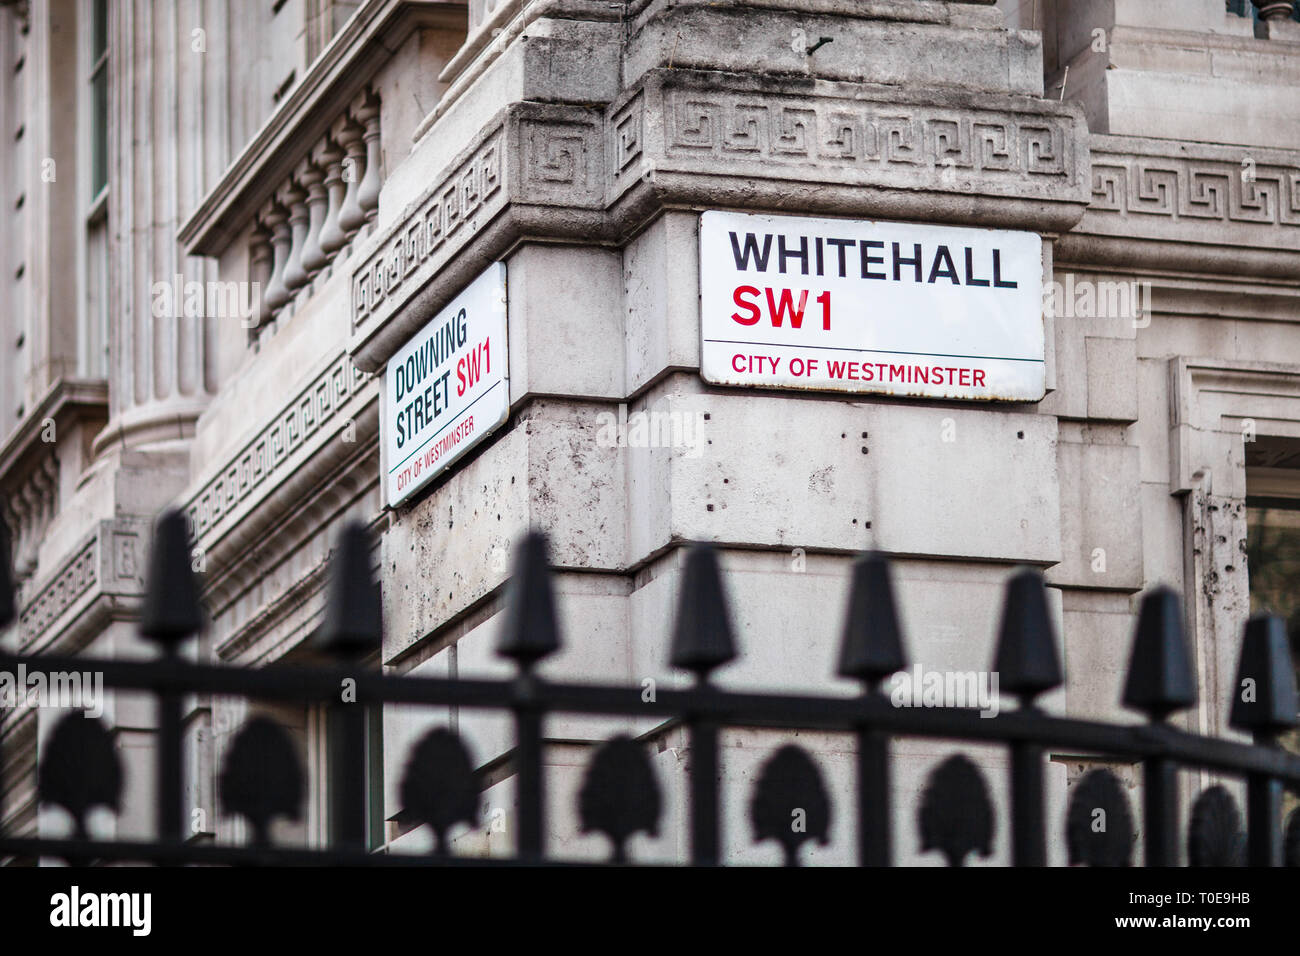 Downing Street & Whitehall SW1 Via Segni di Londra - Whitehall è al cuore della City of Westminster distretto governativo nel centro di Londra Foto Stock